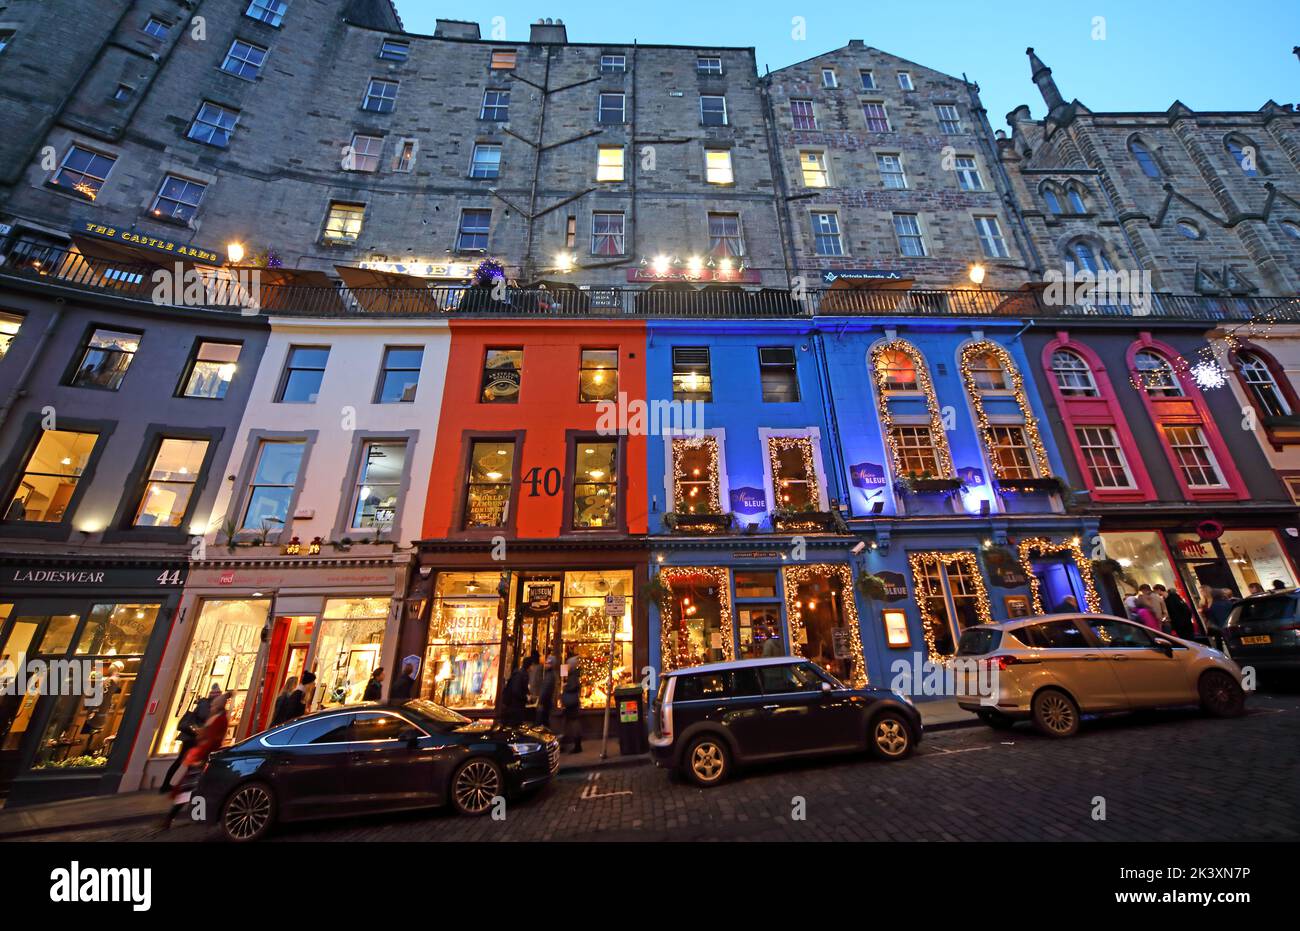 Geschäfte in der Abenddämmerung, auf der Victoria Street, der Altstadt, Edinburgh, Lothian, Schottland, Großbritannien, EH1 2HG - Weltkulturerbe Stockfoto